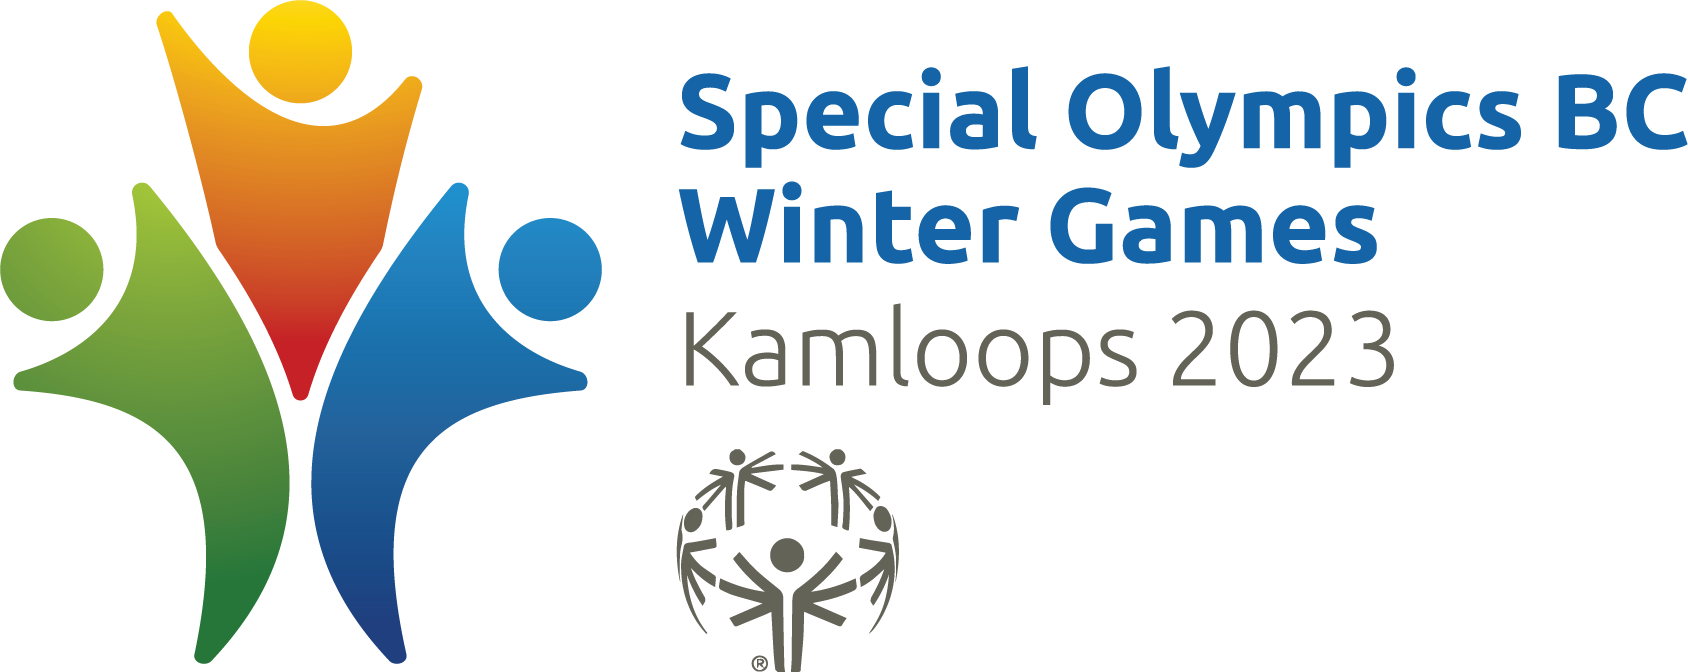 SOBC 2023 Winter Games Kamloops 2023 logo